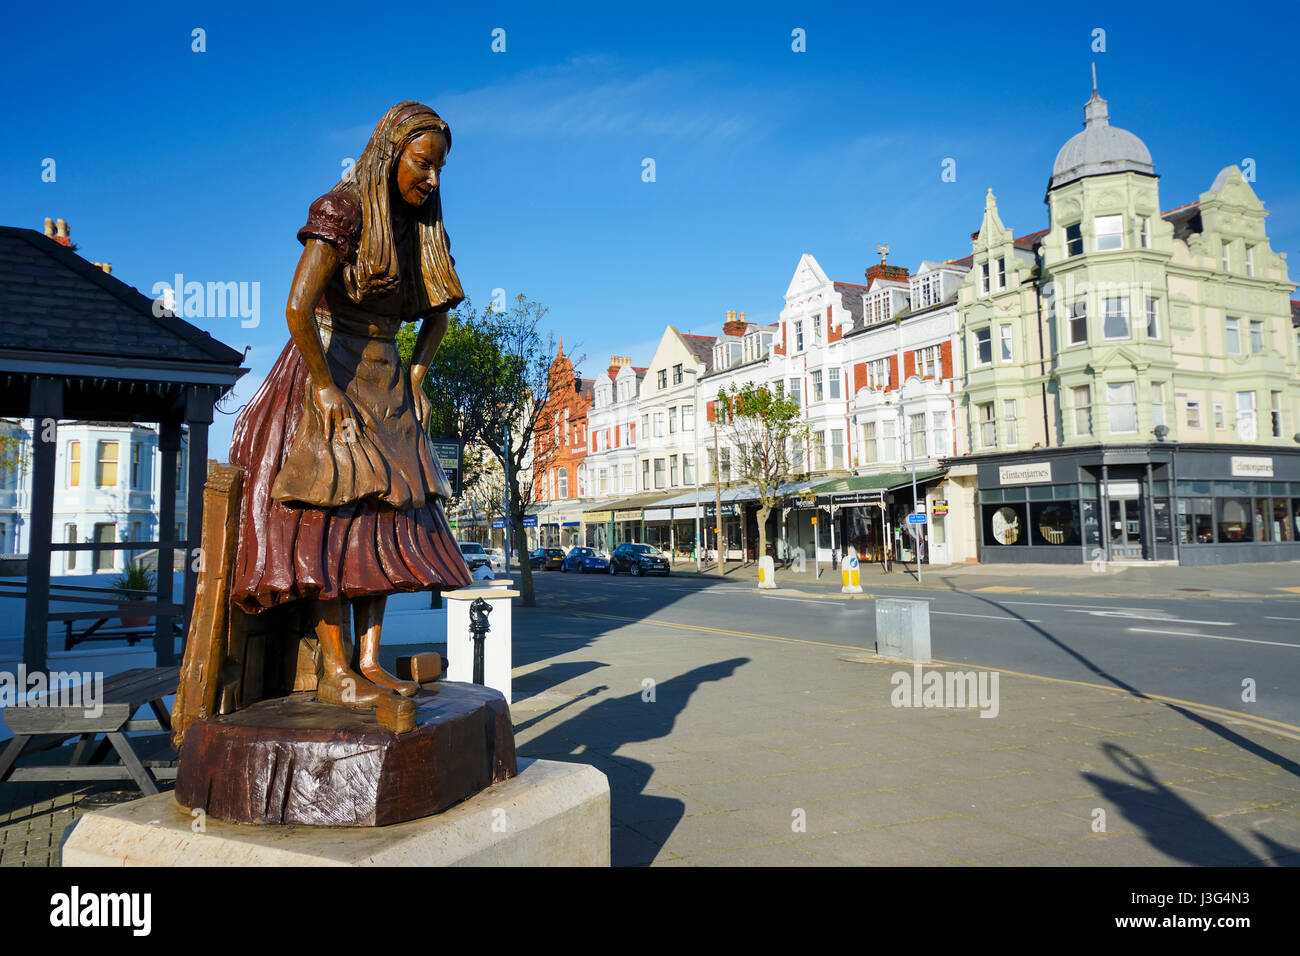 Alice nel Paese delle Meraviglie scolpite in legno statua in Llandudno evidenziando il collegamento alla città con Alice Pleasance Liddell, che il Alice in Wonderlan Foto Stock